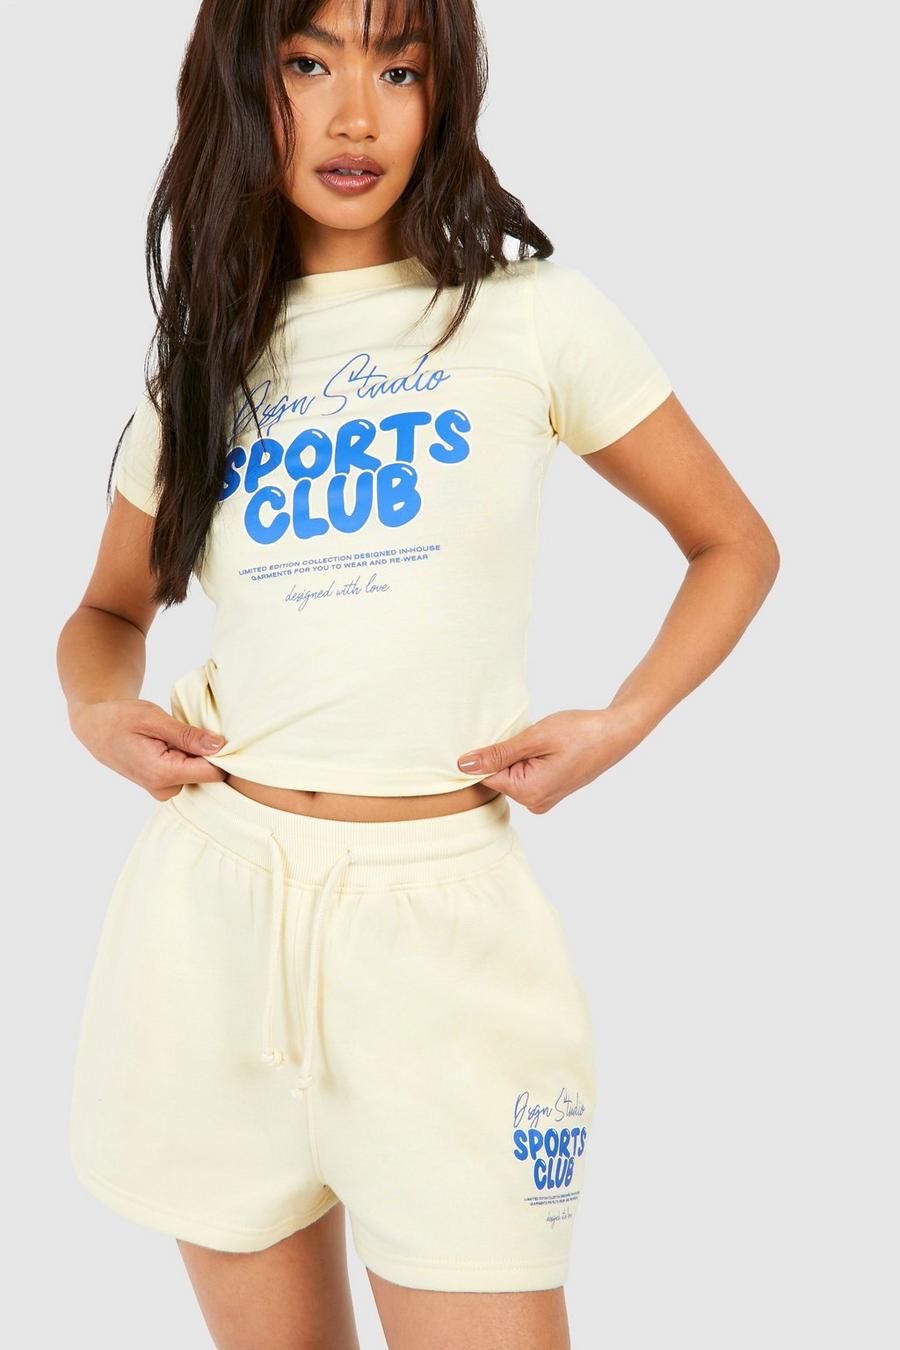 Pantalón corto deportivo Dsgn Studio con eslogan Sports Club, Lemon